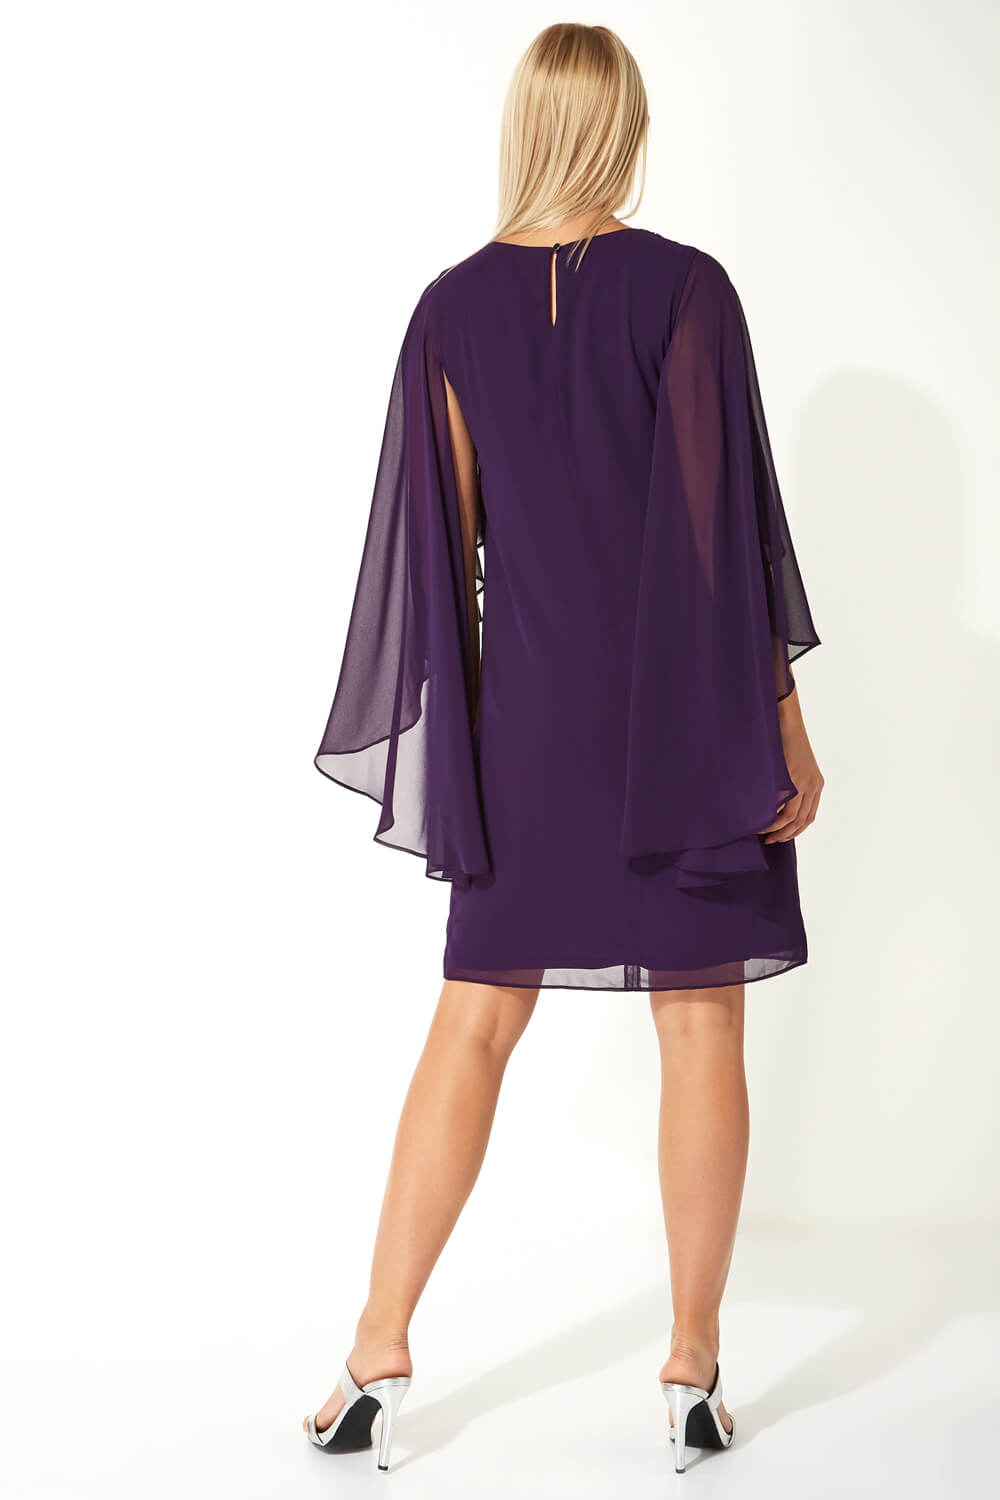 Purple Embellished Trim Chiffon Dress, Image 3 of 5